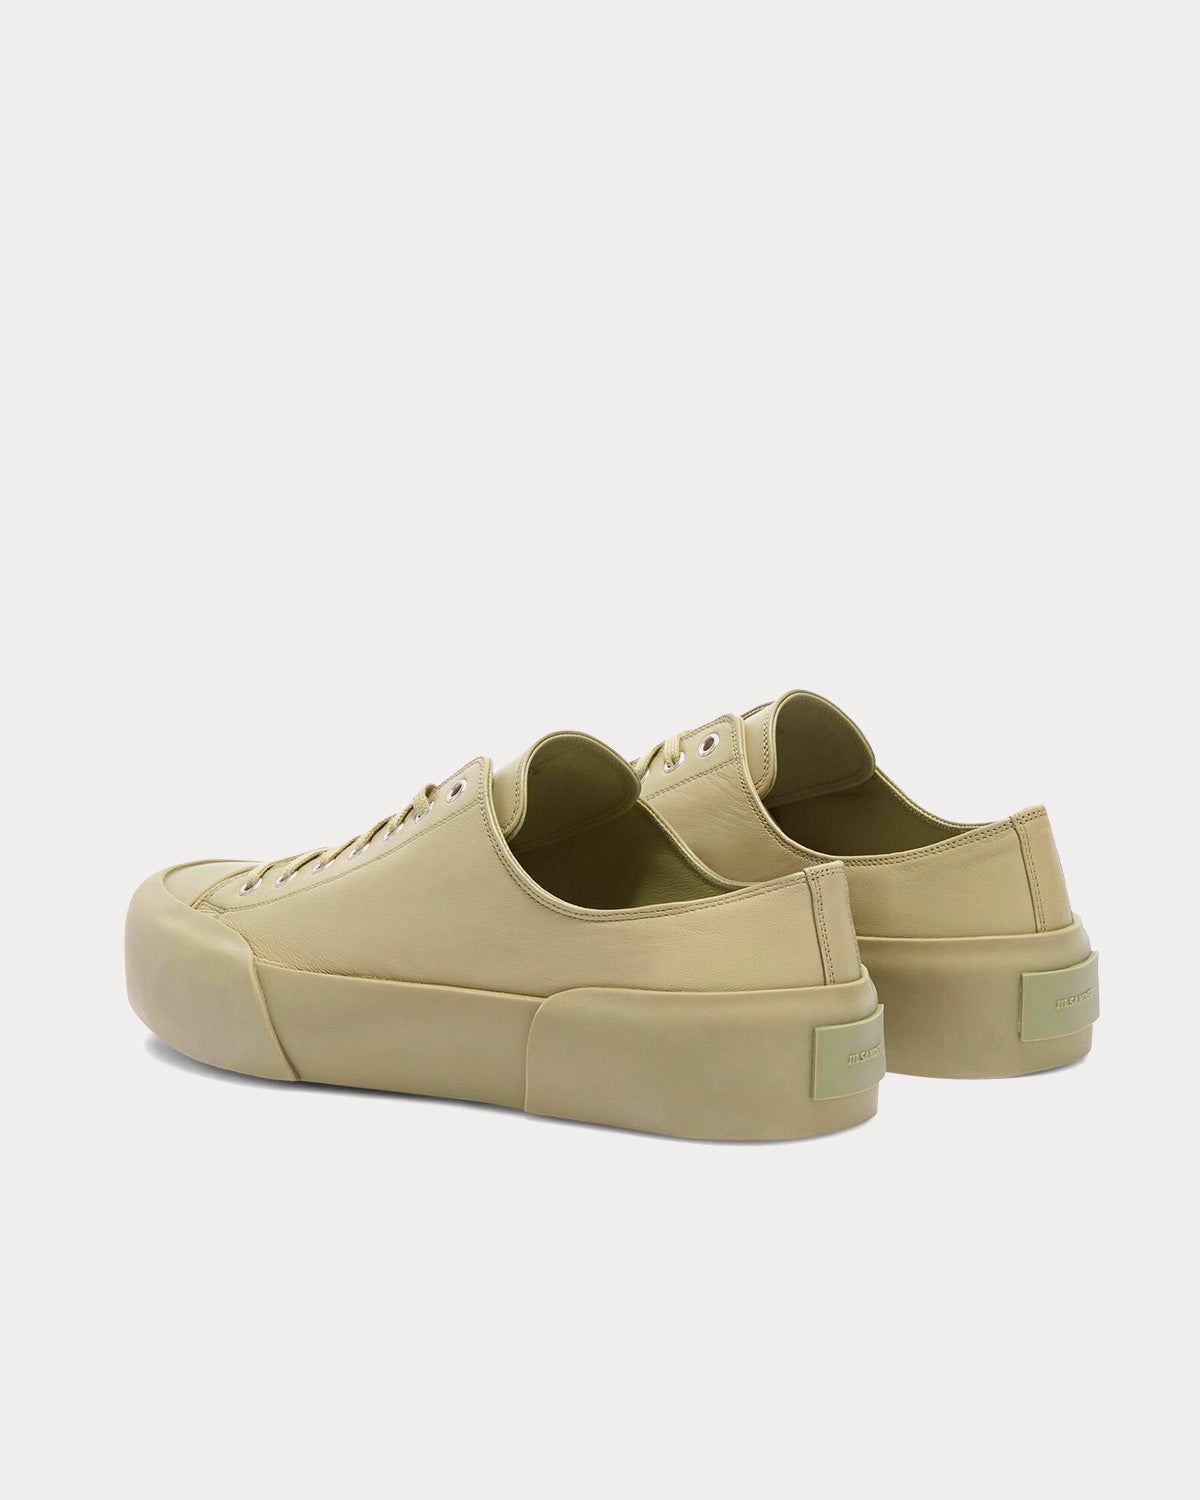 Jil Sander - Leather Pastel Green Low Top Sneakers